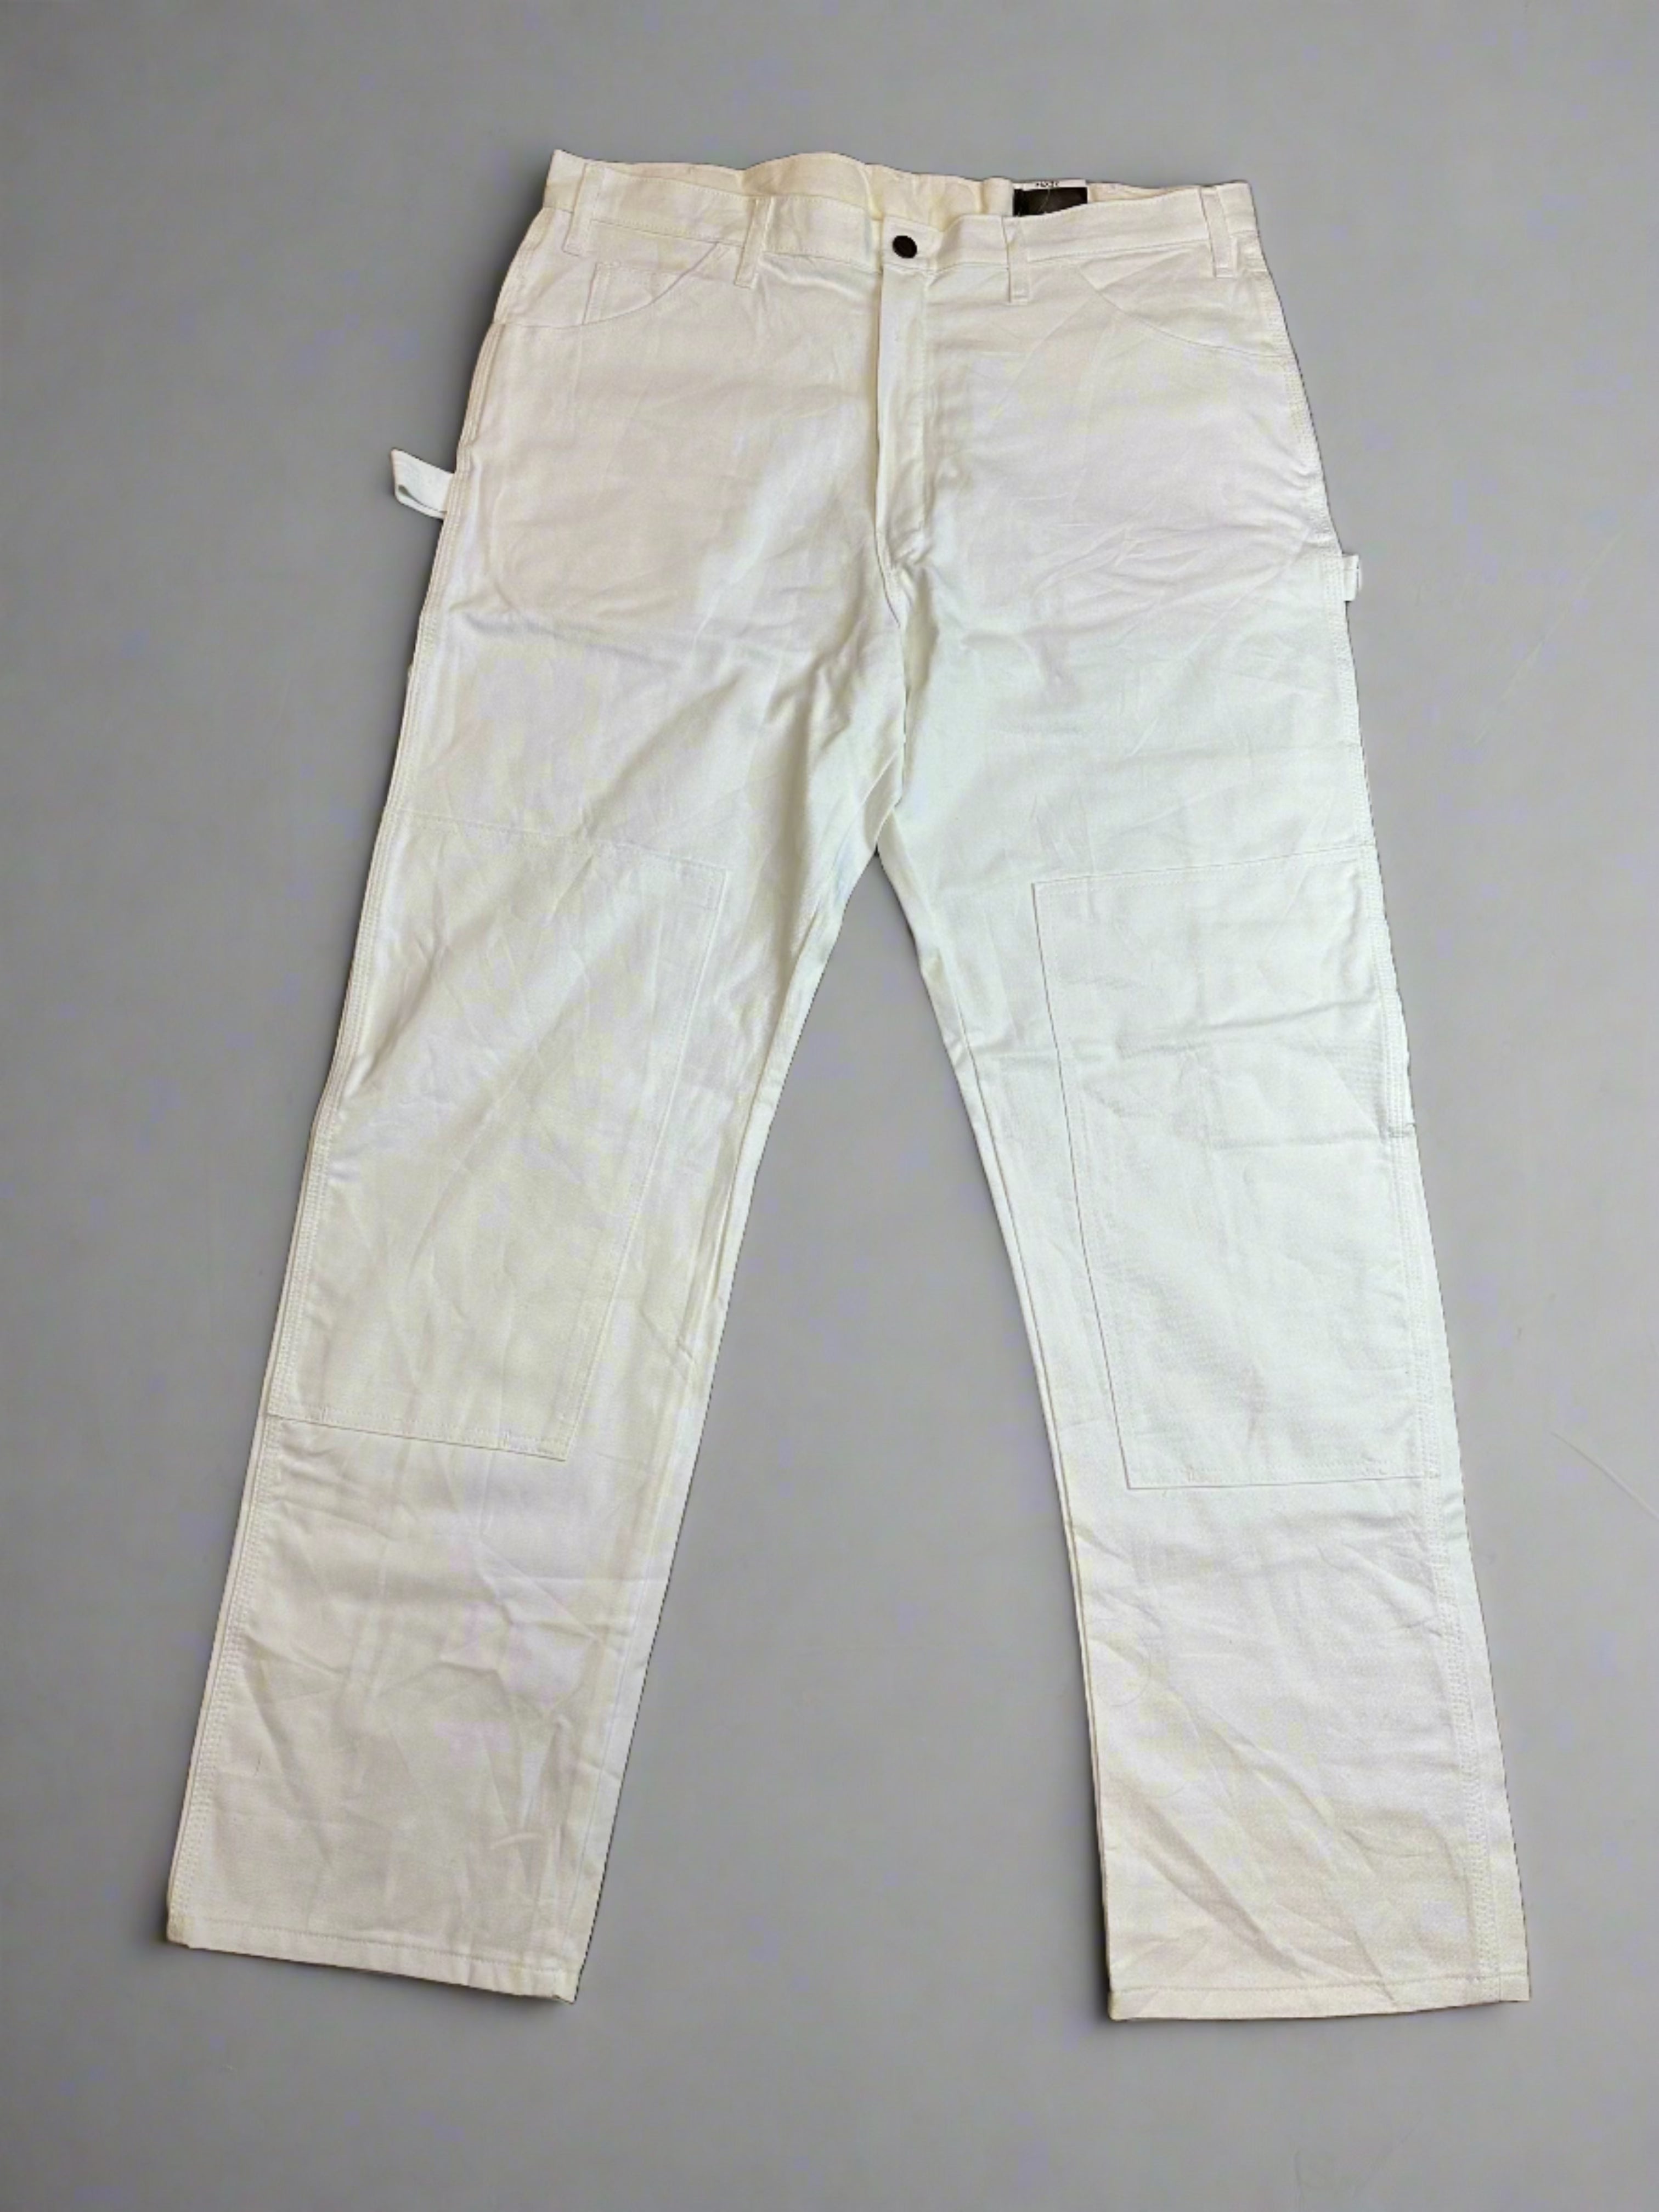 Vintage Dickies Double Knee Pants - size 36x32